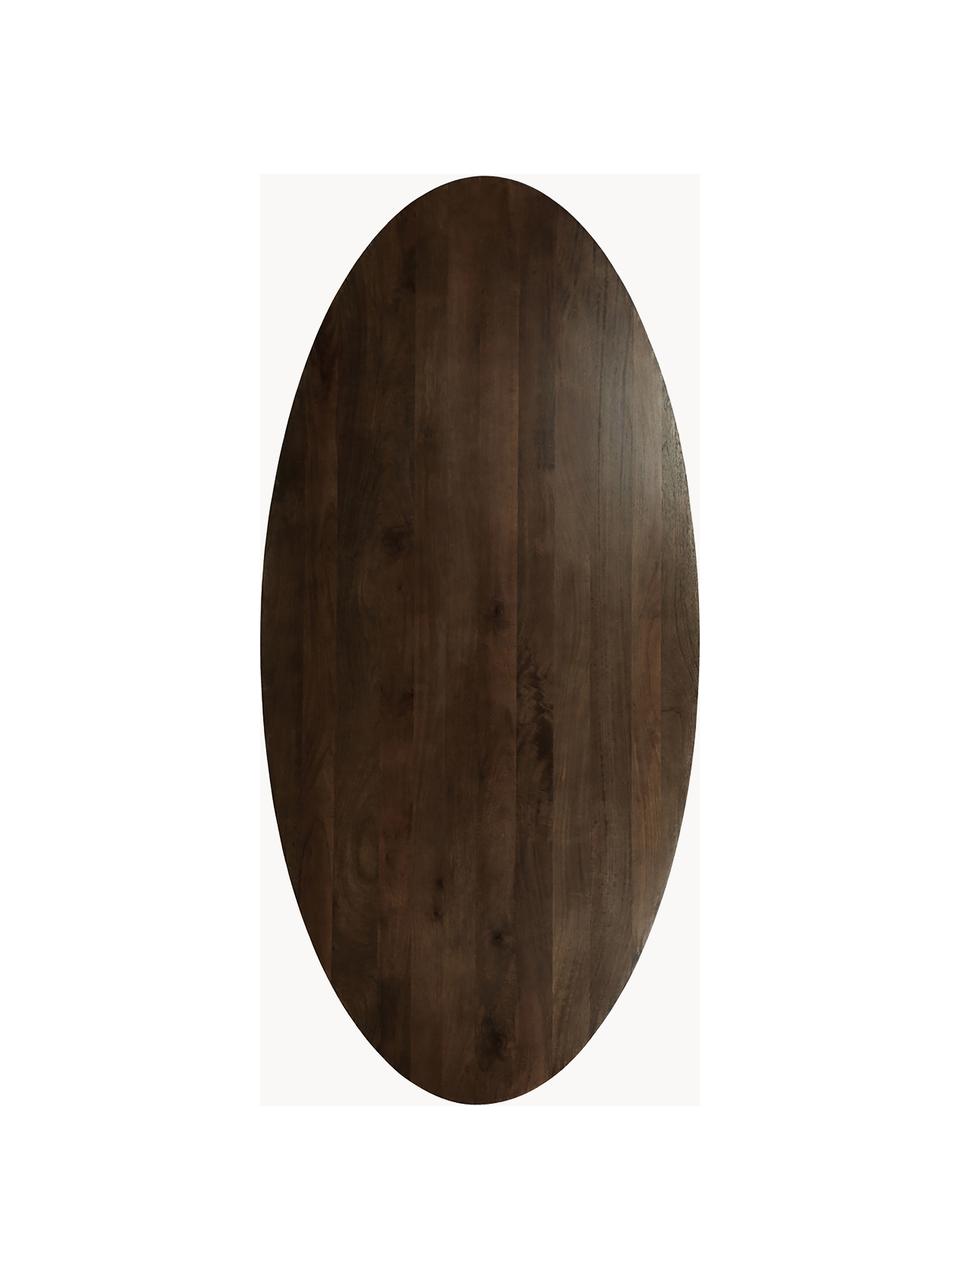 Ovaler Esstisch Oscar aus Mangoholz, 203 x 97 cm, Mangoholz massiv, lackiert, Mangoholz, B 203 x T 97 cm